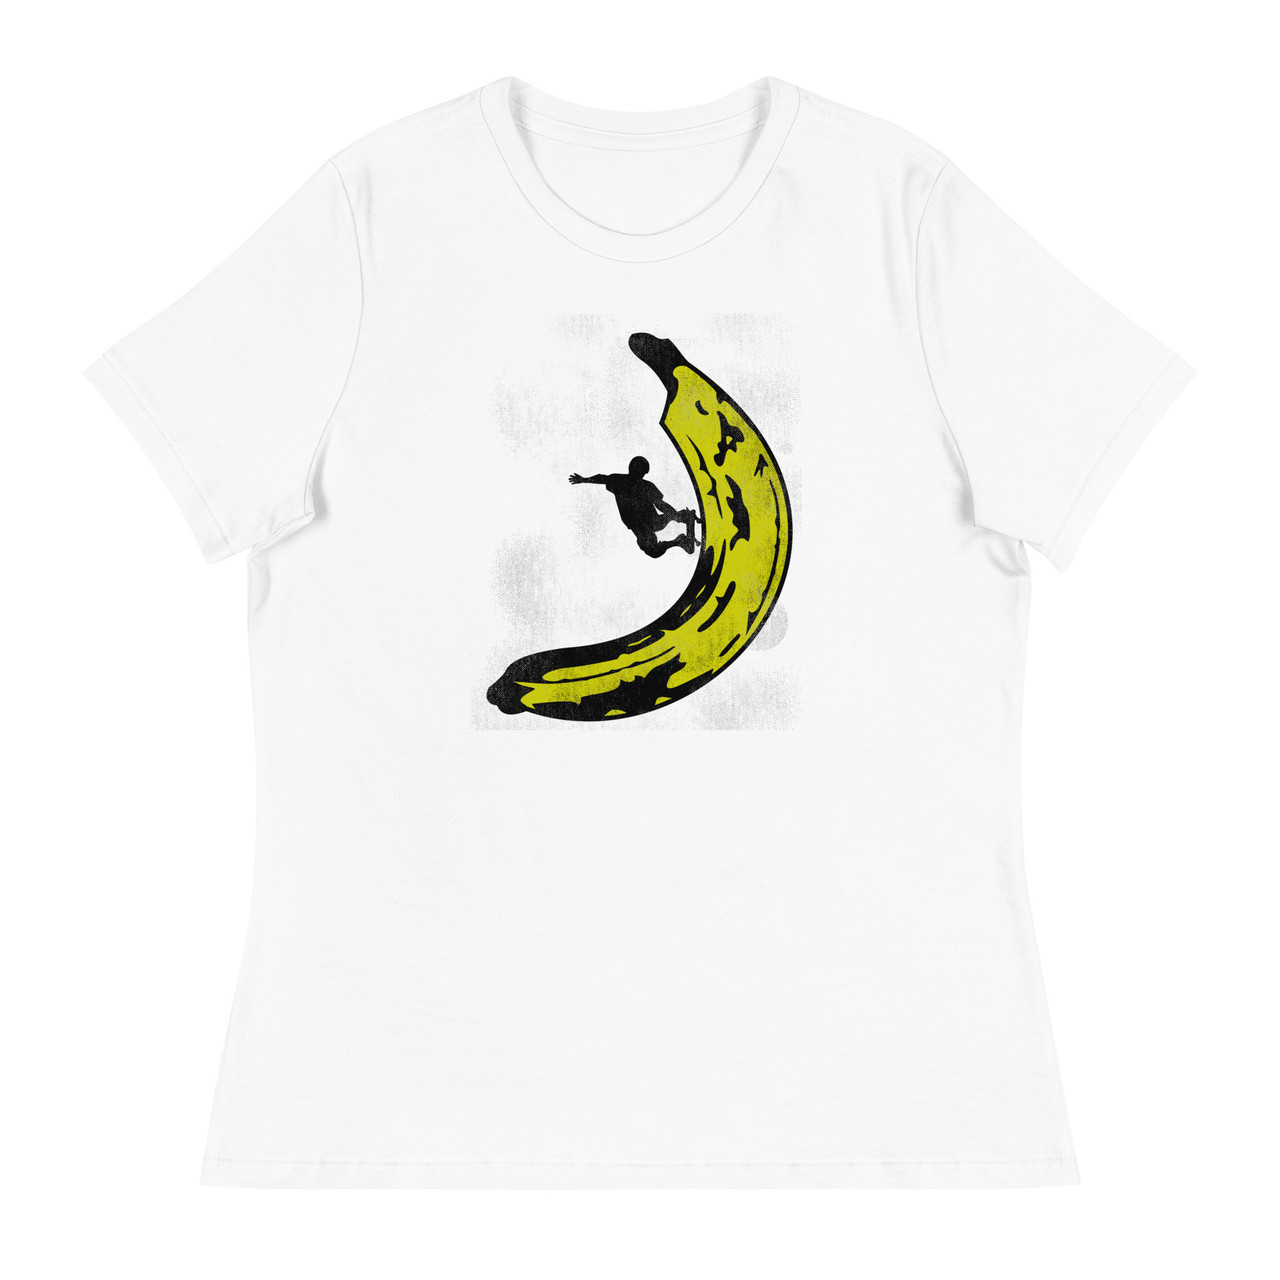 Banana Skateboard Women's Relaxed T-Shirt - Bella + Canvas 6400 